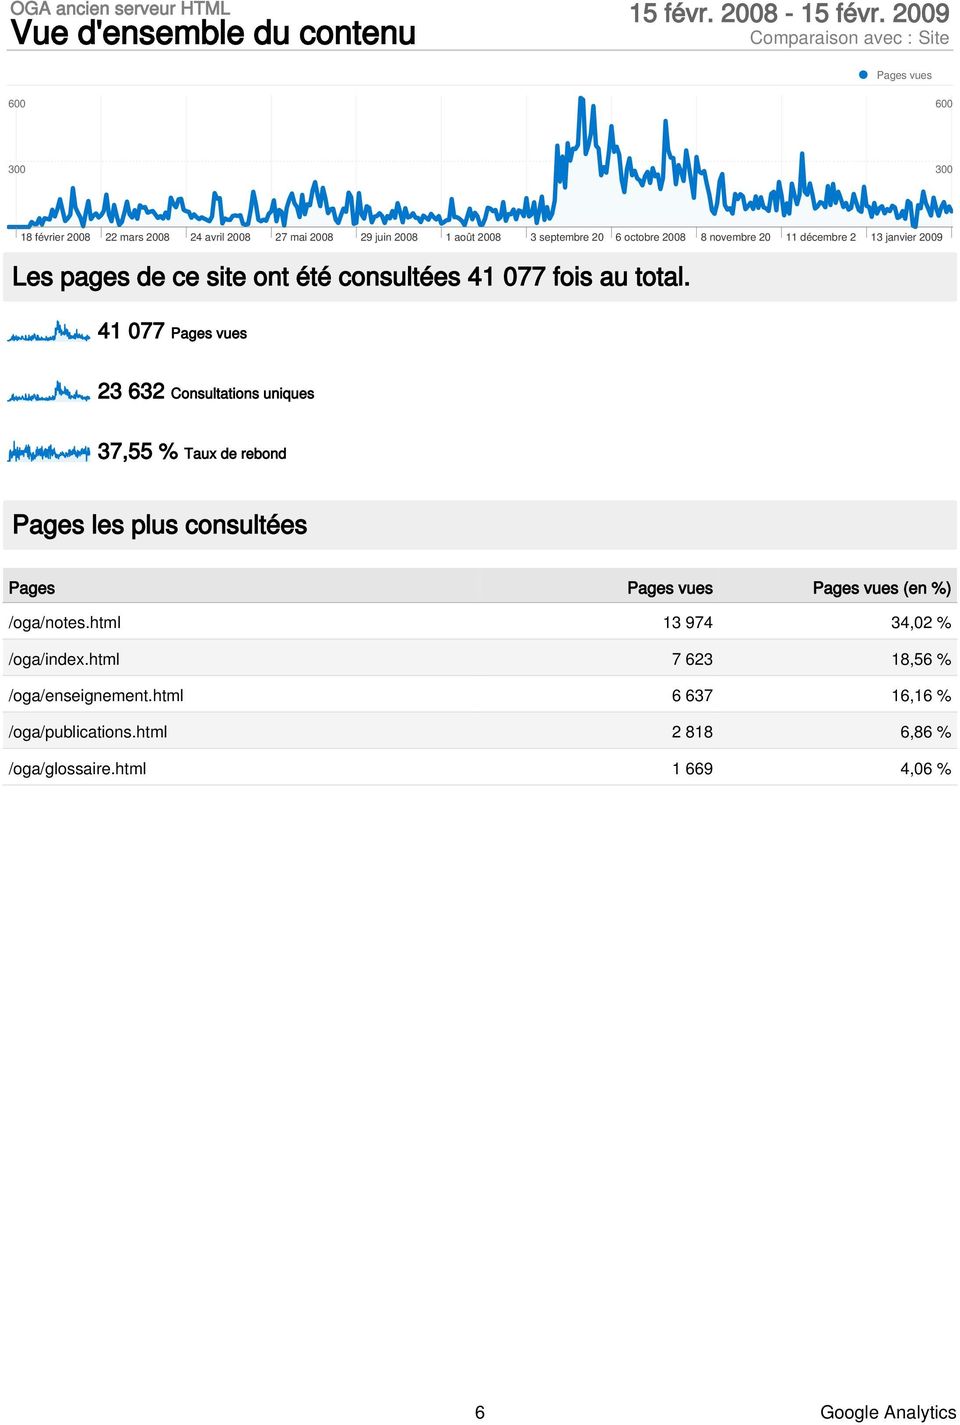 41 077 Pages vues 23 632 Consultations uniques 37,55 % Taux de rebond Pages les plus consultées Pages Pages vues Pages vues (en %) /oga/notes.